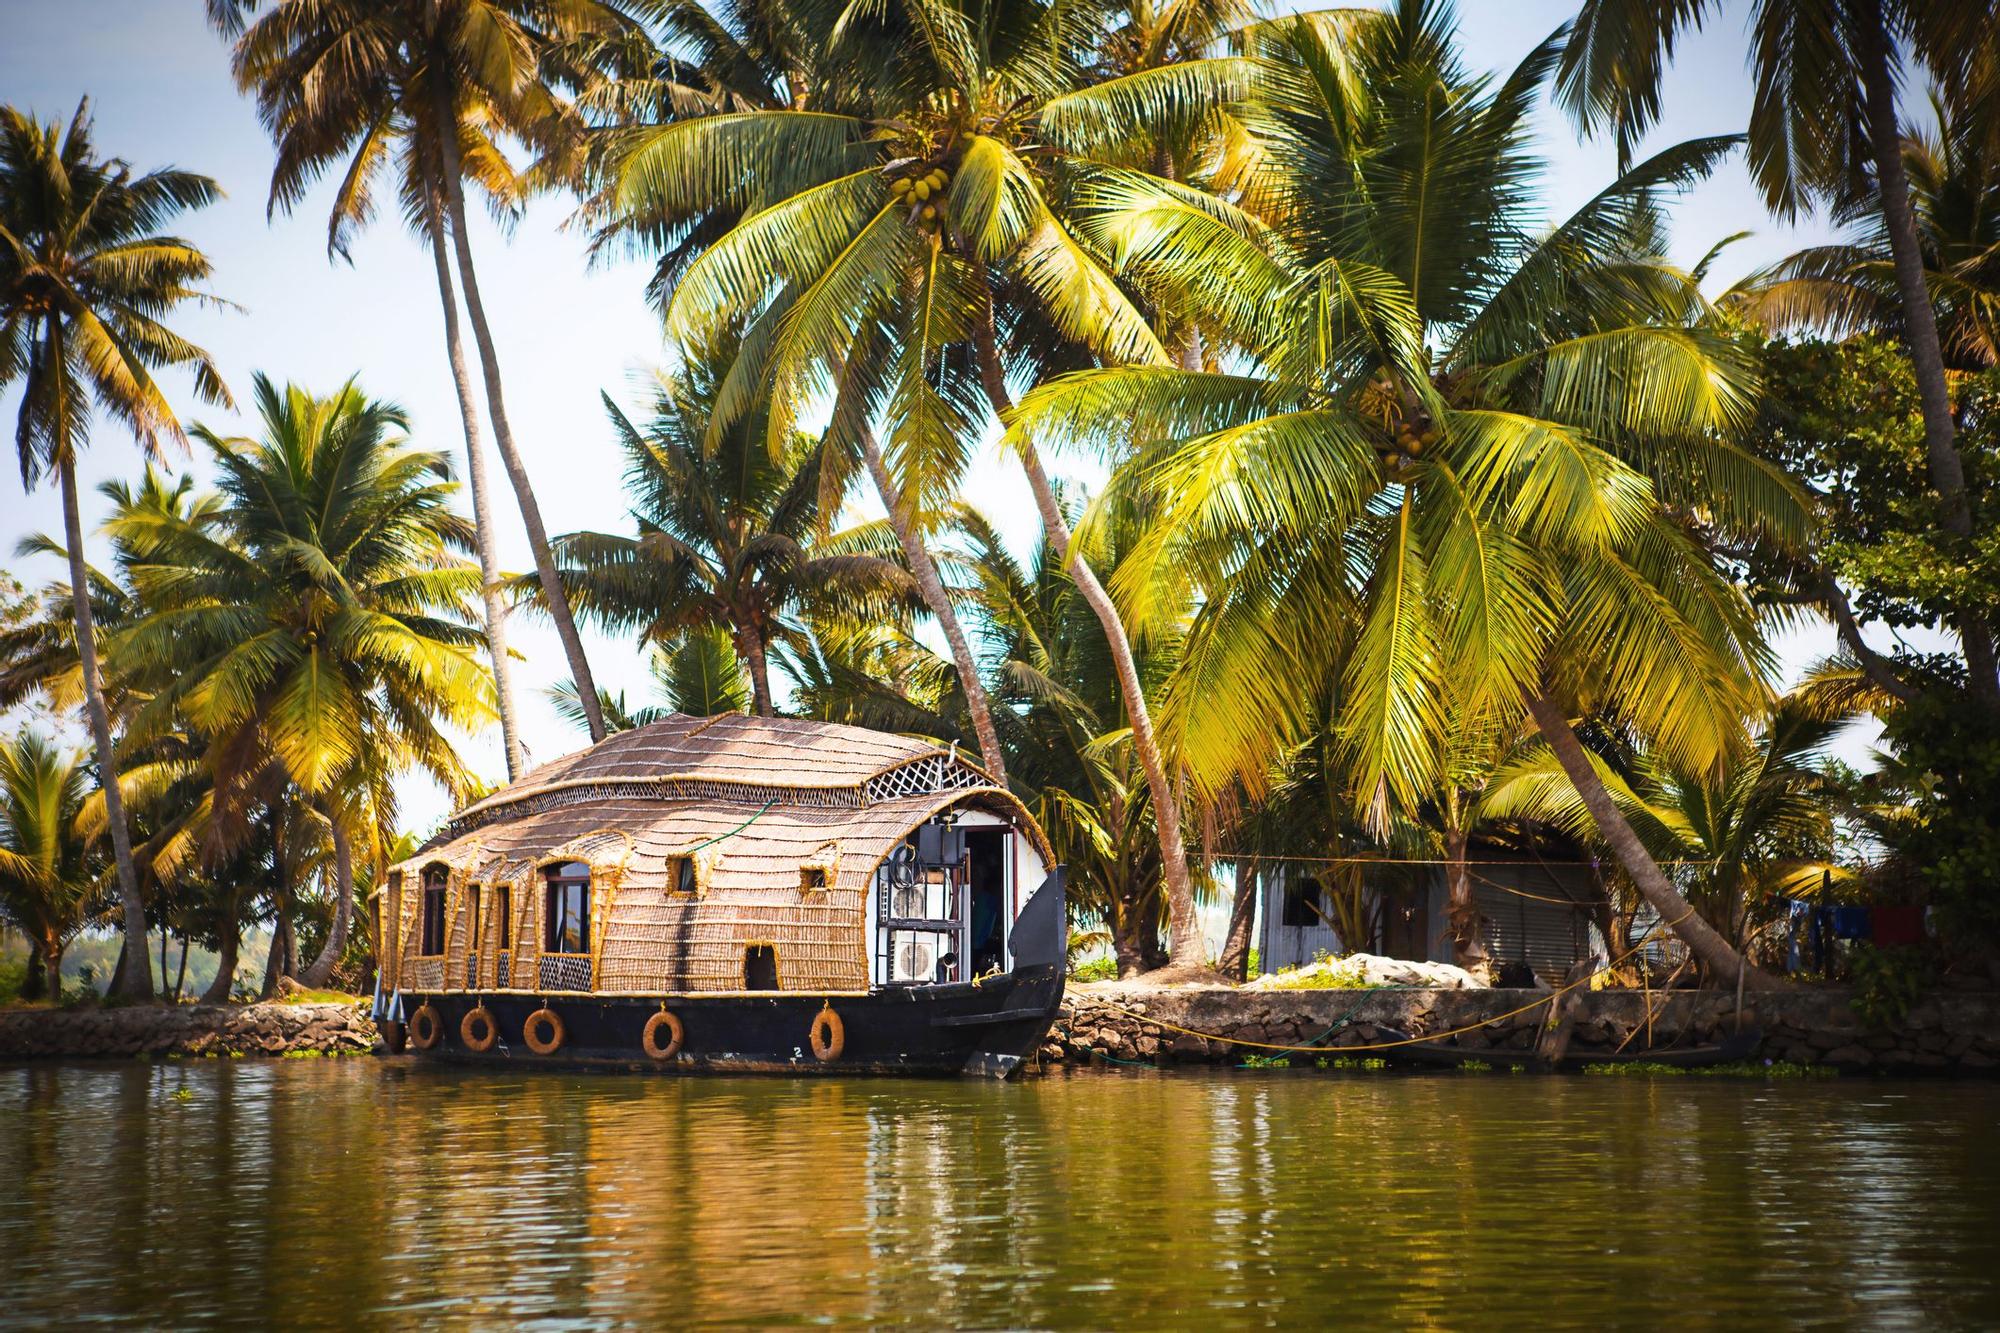 Las casas flotantes típicas de Alappuzha eran embarcaciones dedicadas al transporte de arroz y seda